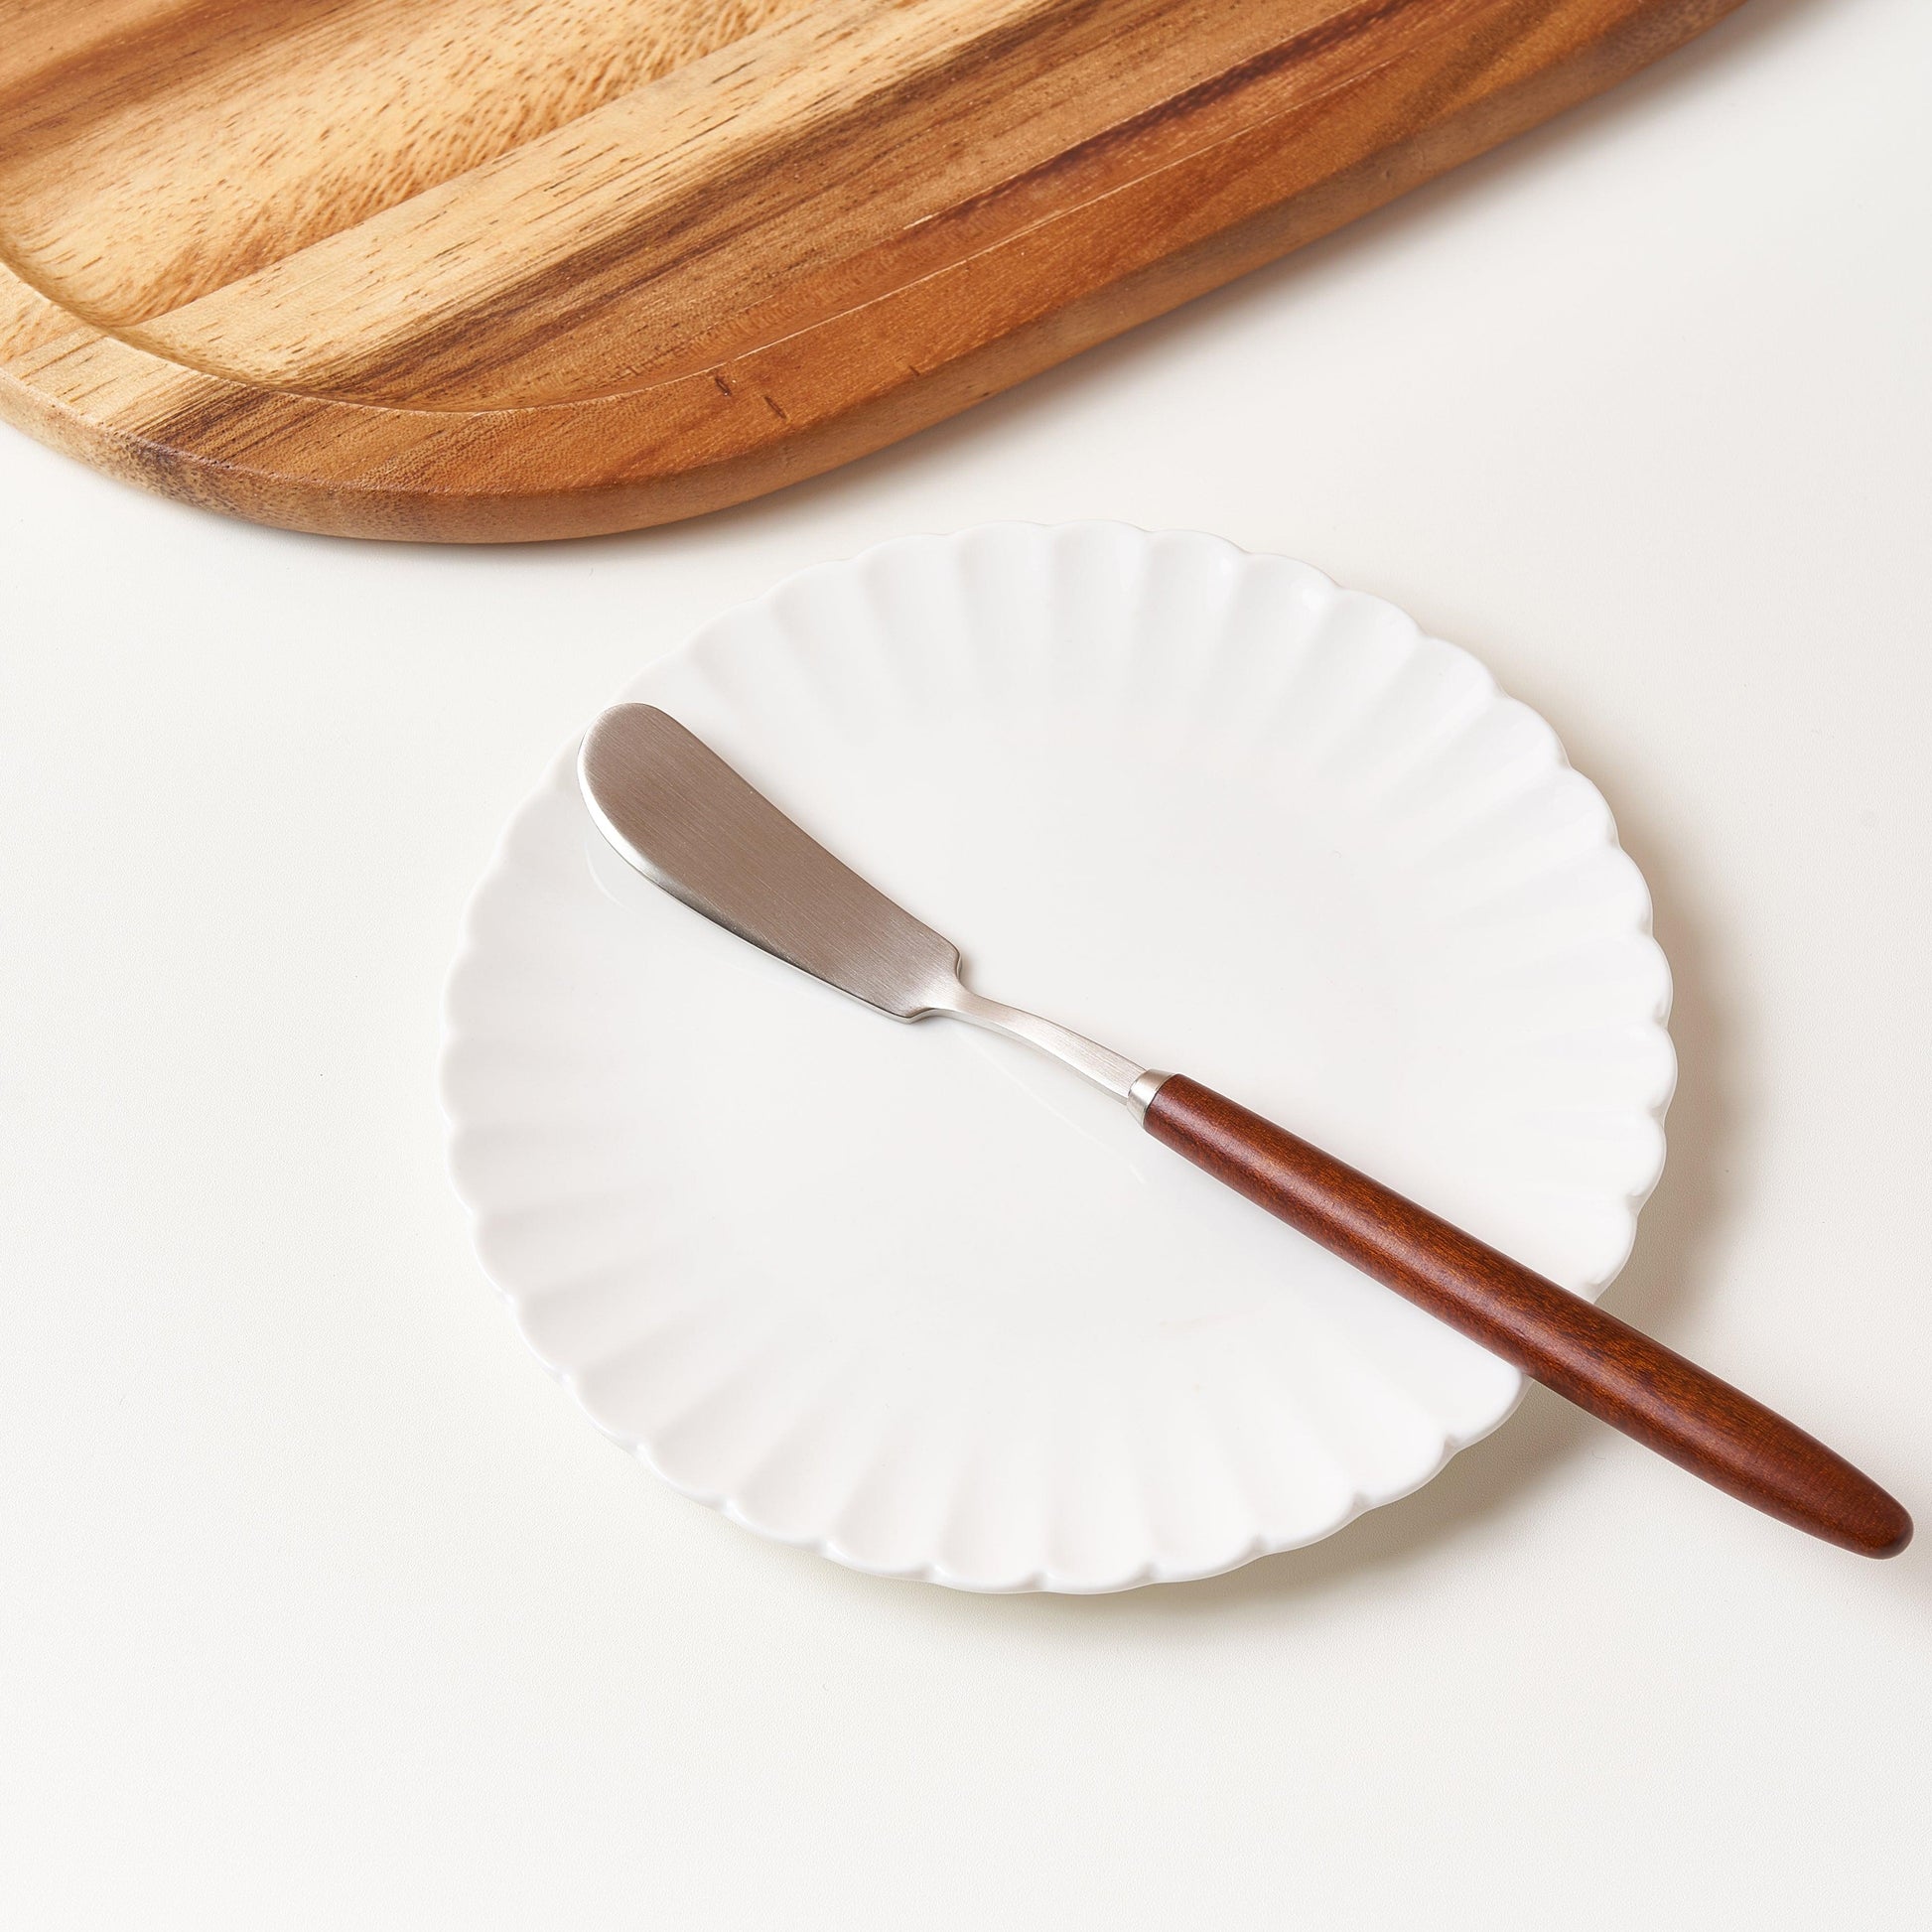 [Bogen] Hard Maple Butter Knife, 1pc - HANKOOK